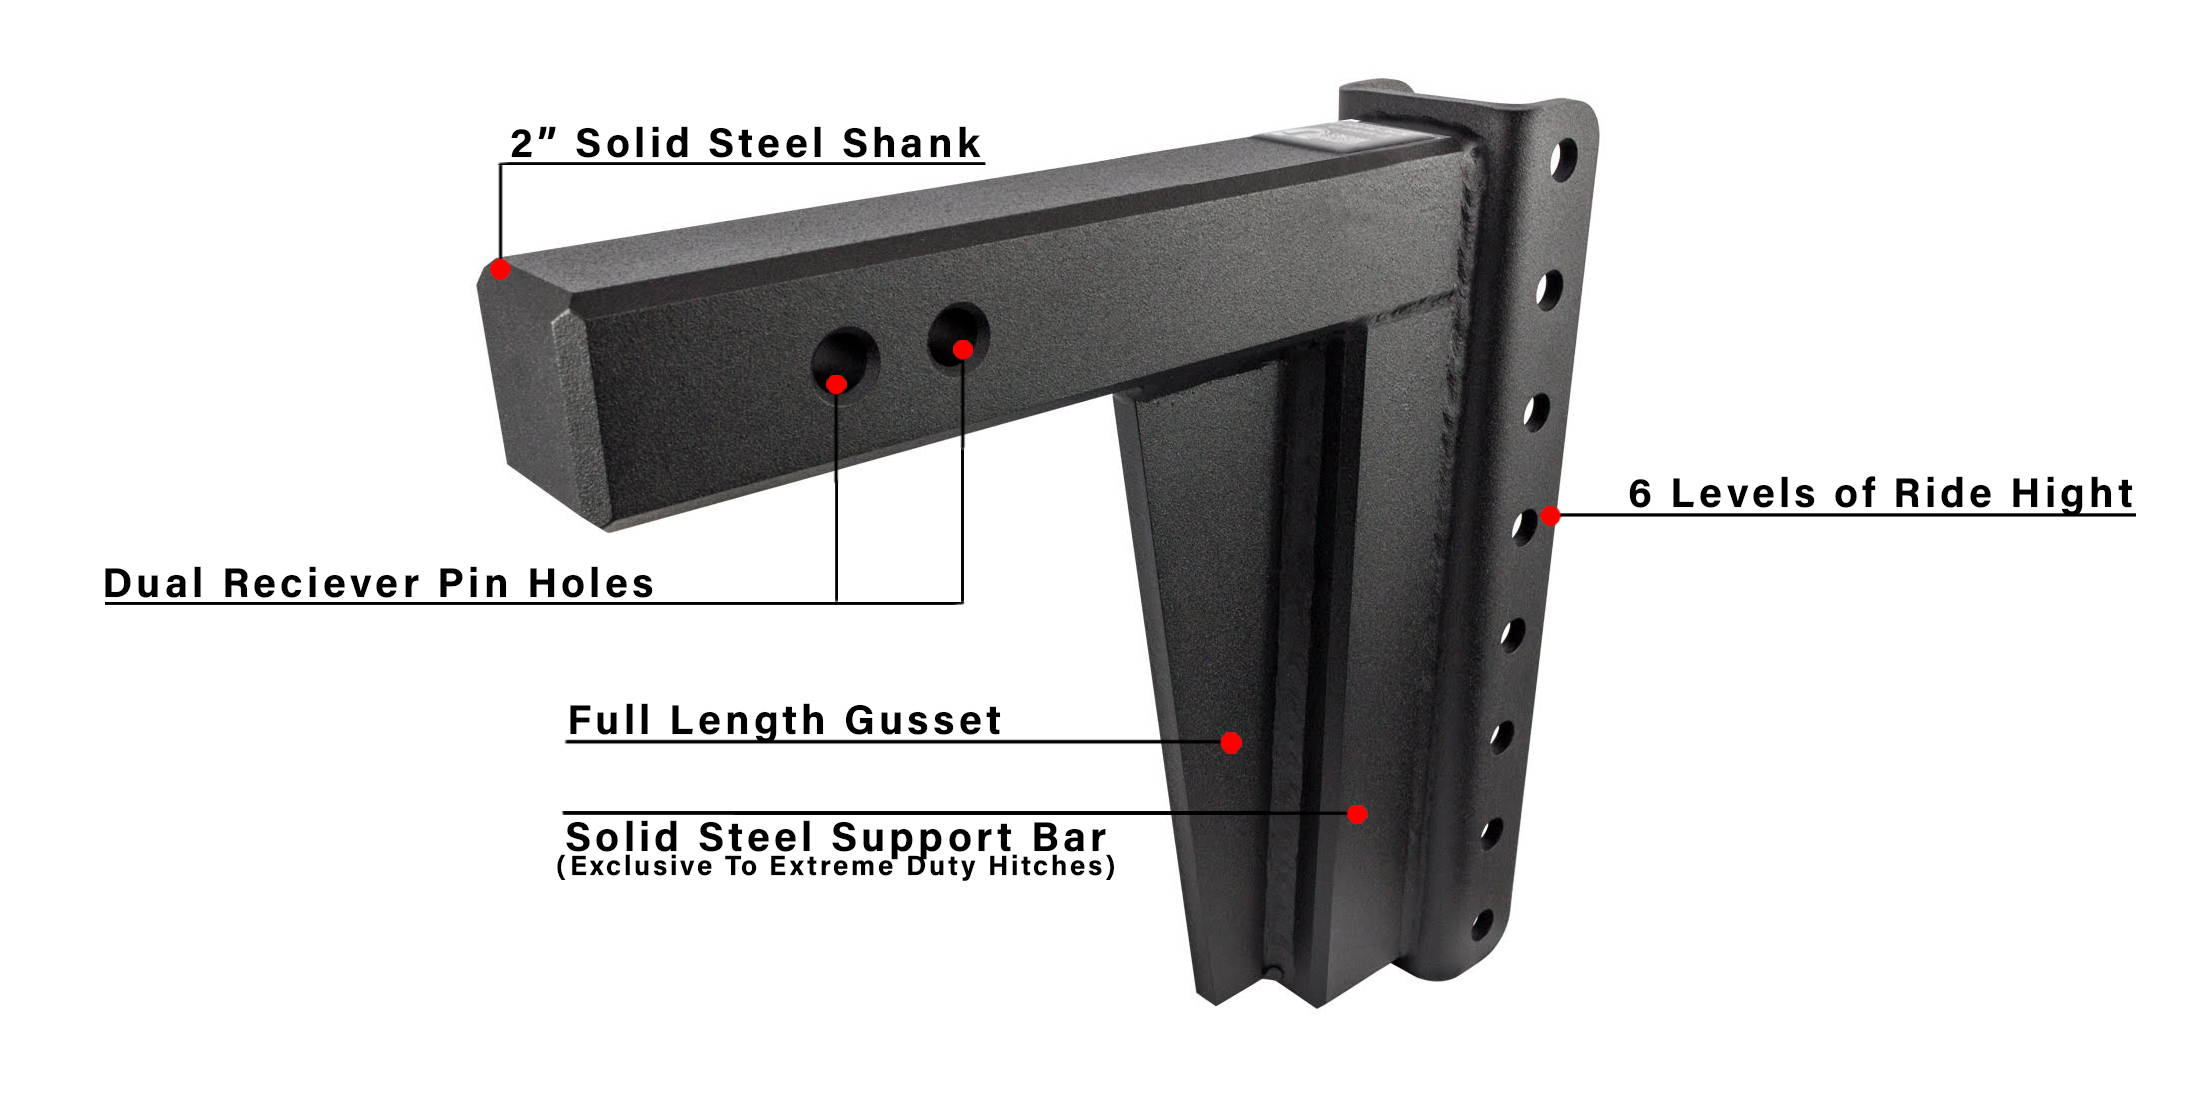 Features of BulletProof Solid Steel Shank Description